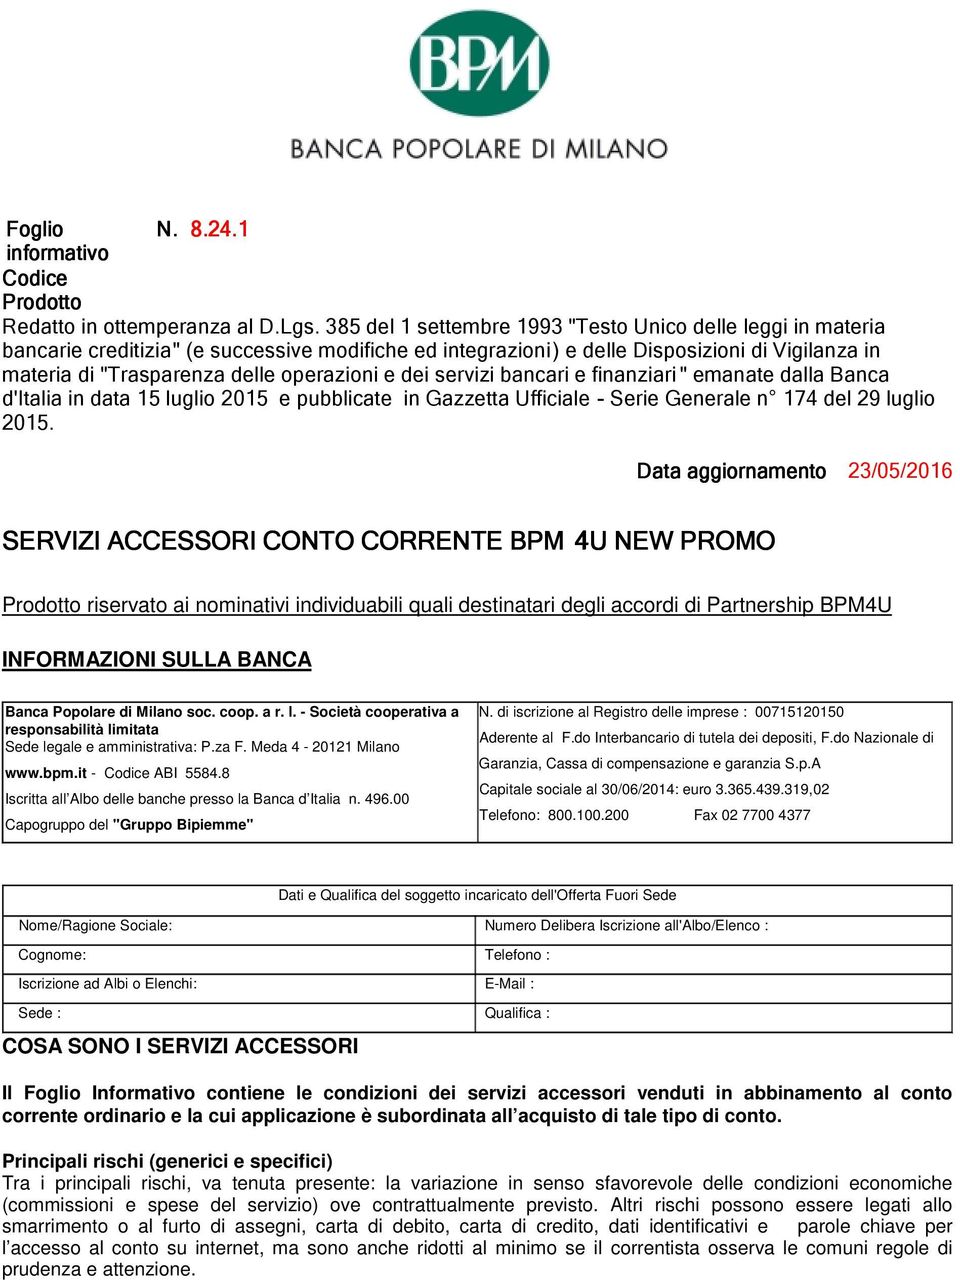 operazioni e dei servizi bancari e finanziari " emanate dalla Banca d'italia in data 15 luglio 2015 e pubblicate in Gazzetta Ufficiale - Serie Generale n 174 del 29 luglio 2015.